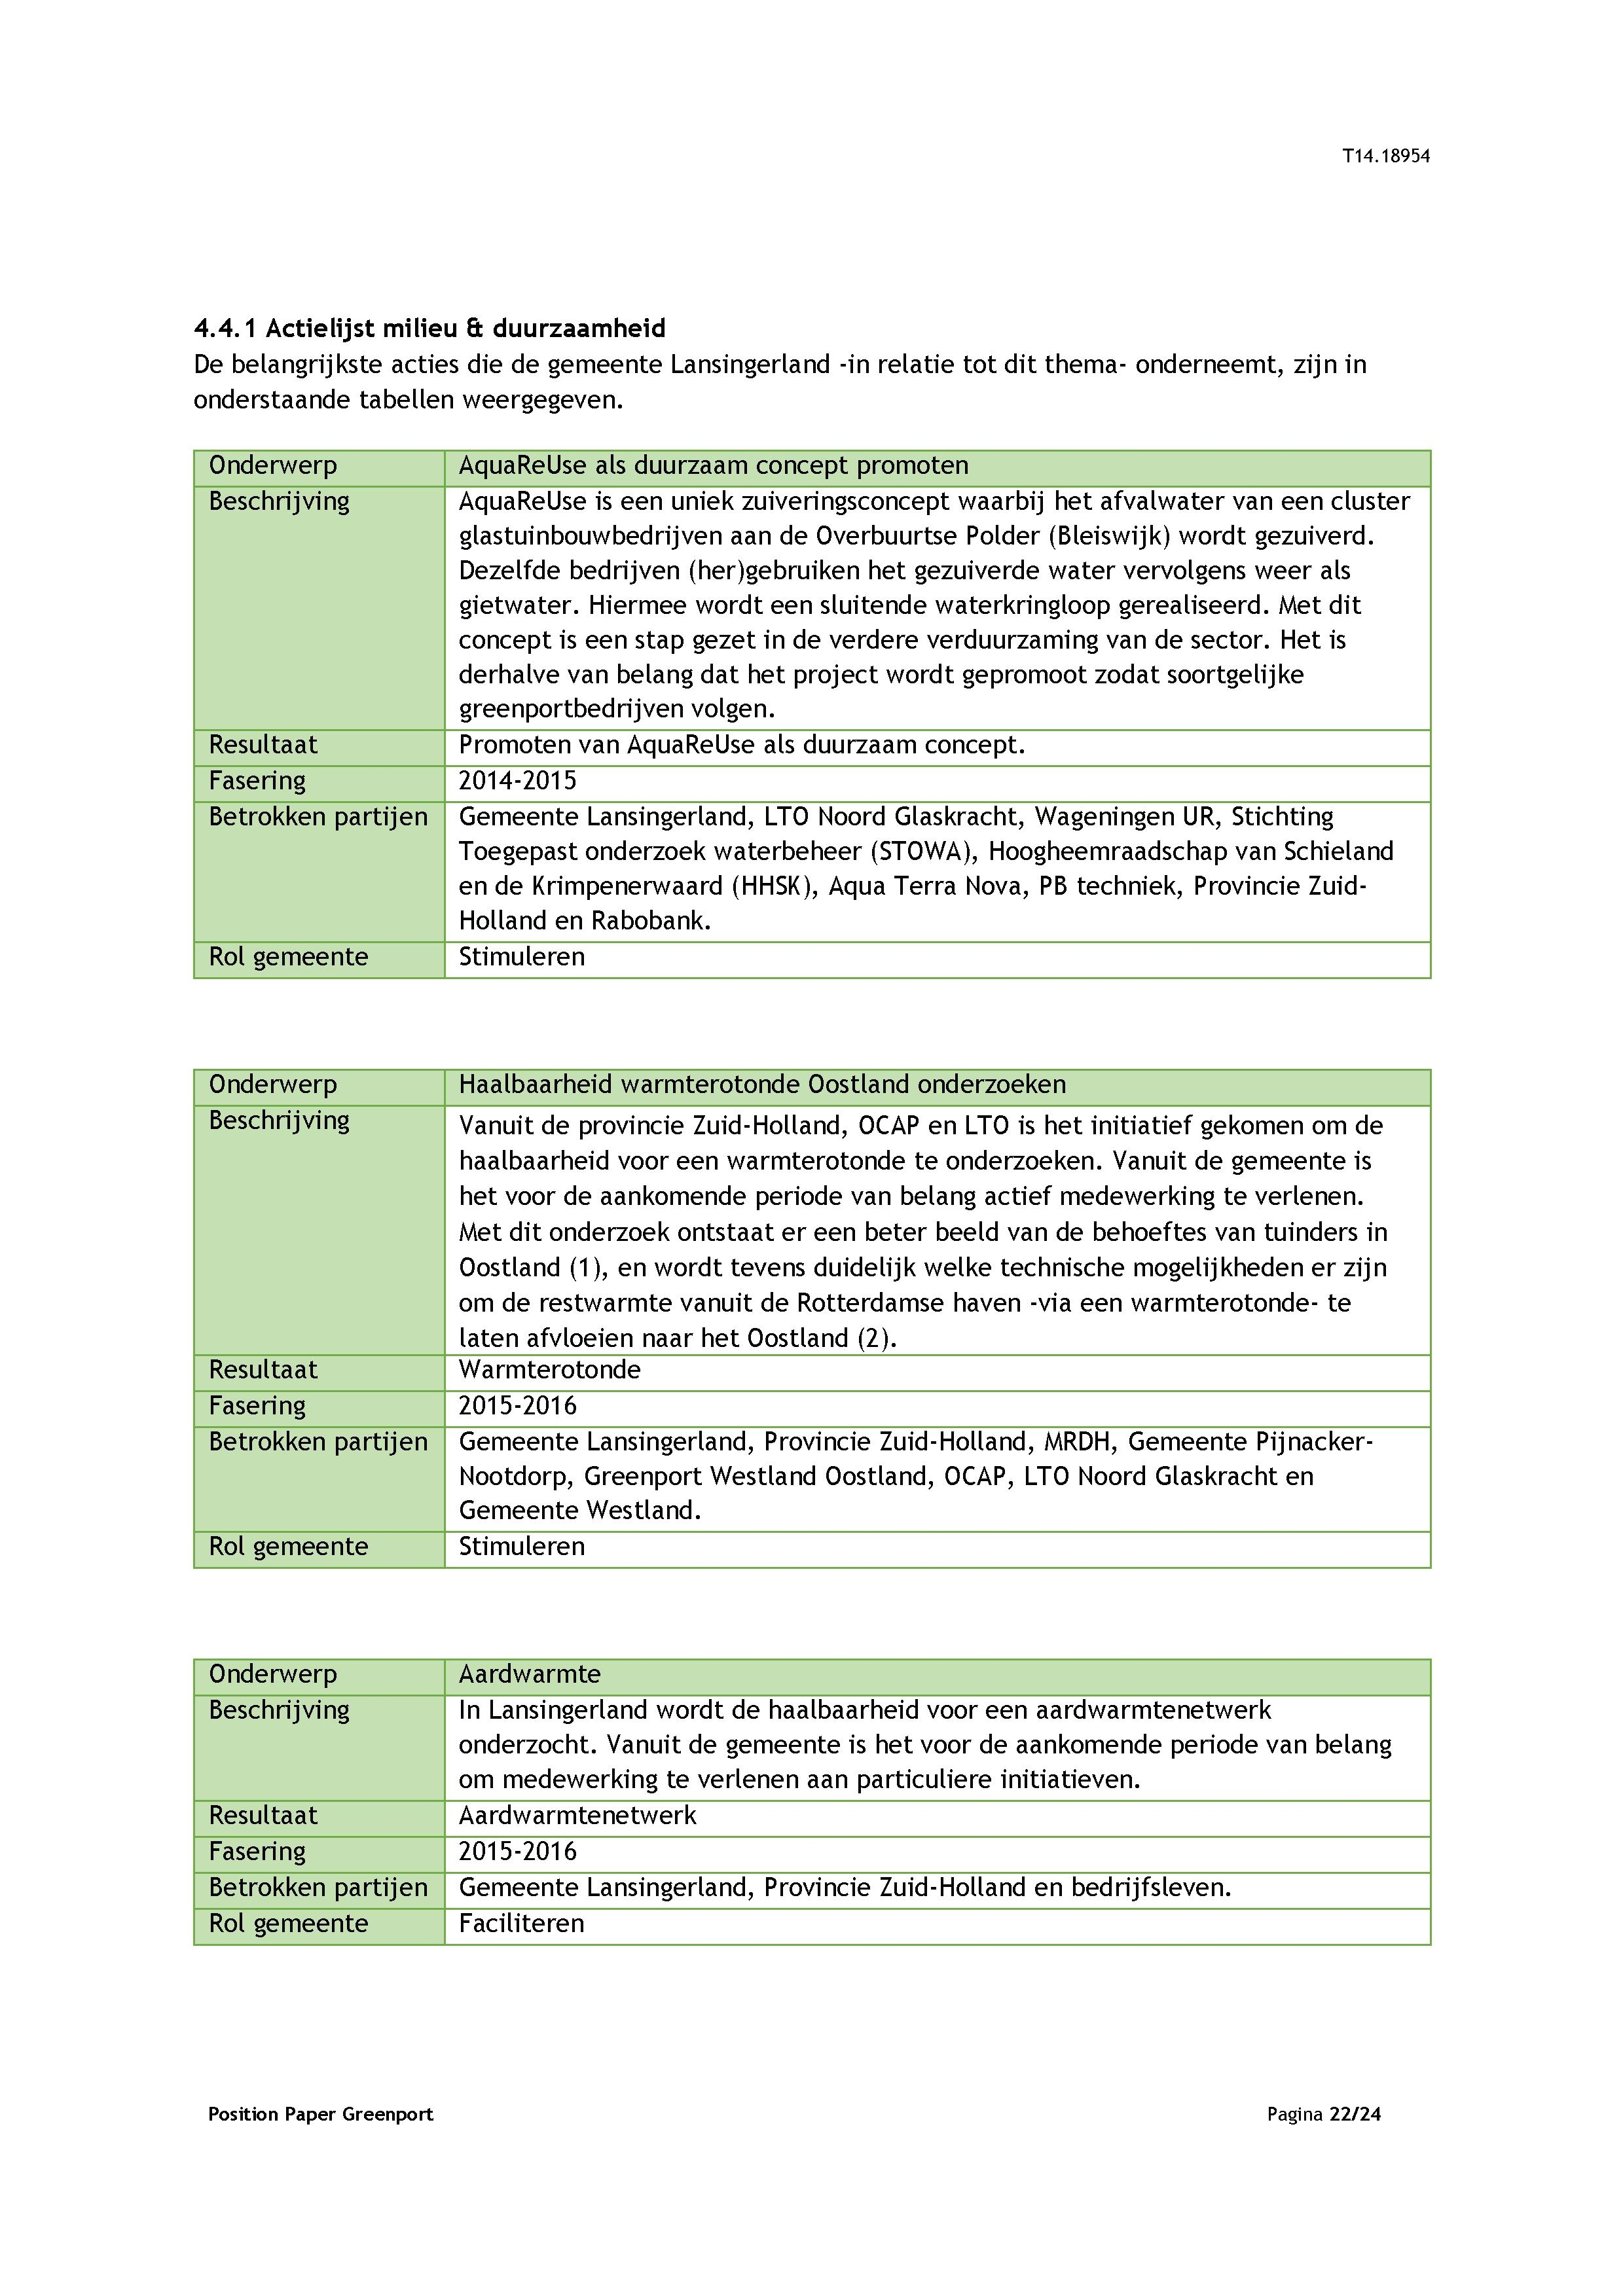 4.4.1 Actielijst milieu ā duurzaamheid De belangrijkste acties die de gemeente Lansingerland -in relatie tot dit thema- onderneemt, zijn in onderstaande tabellen weergegeven.